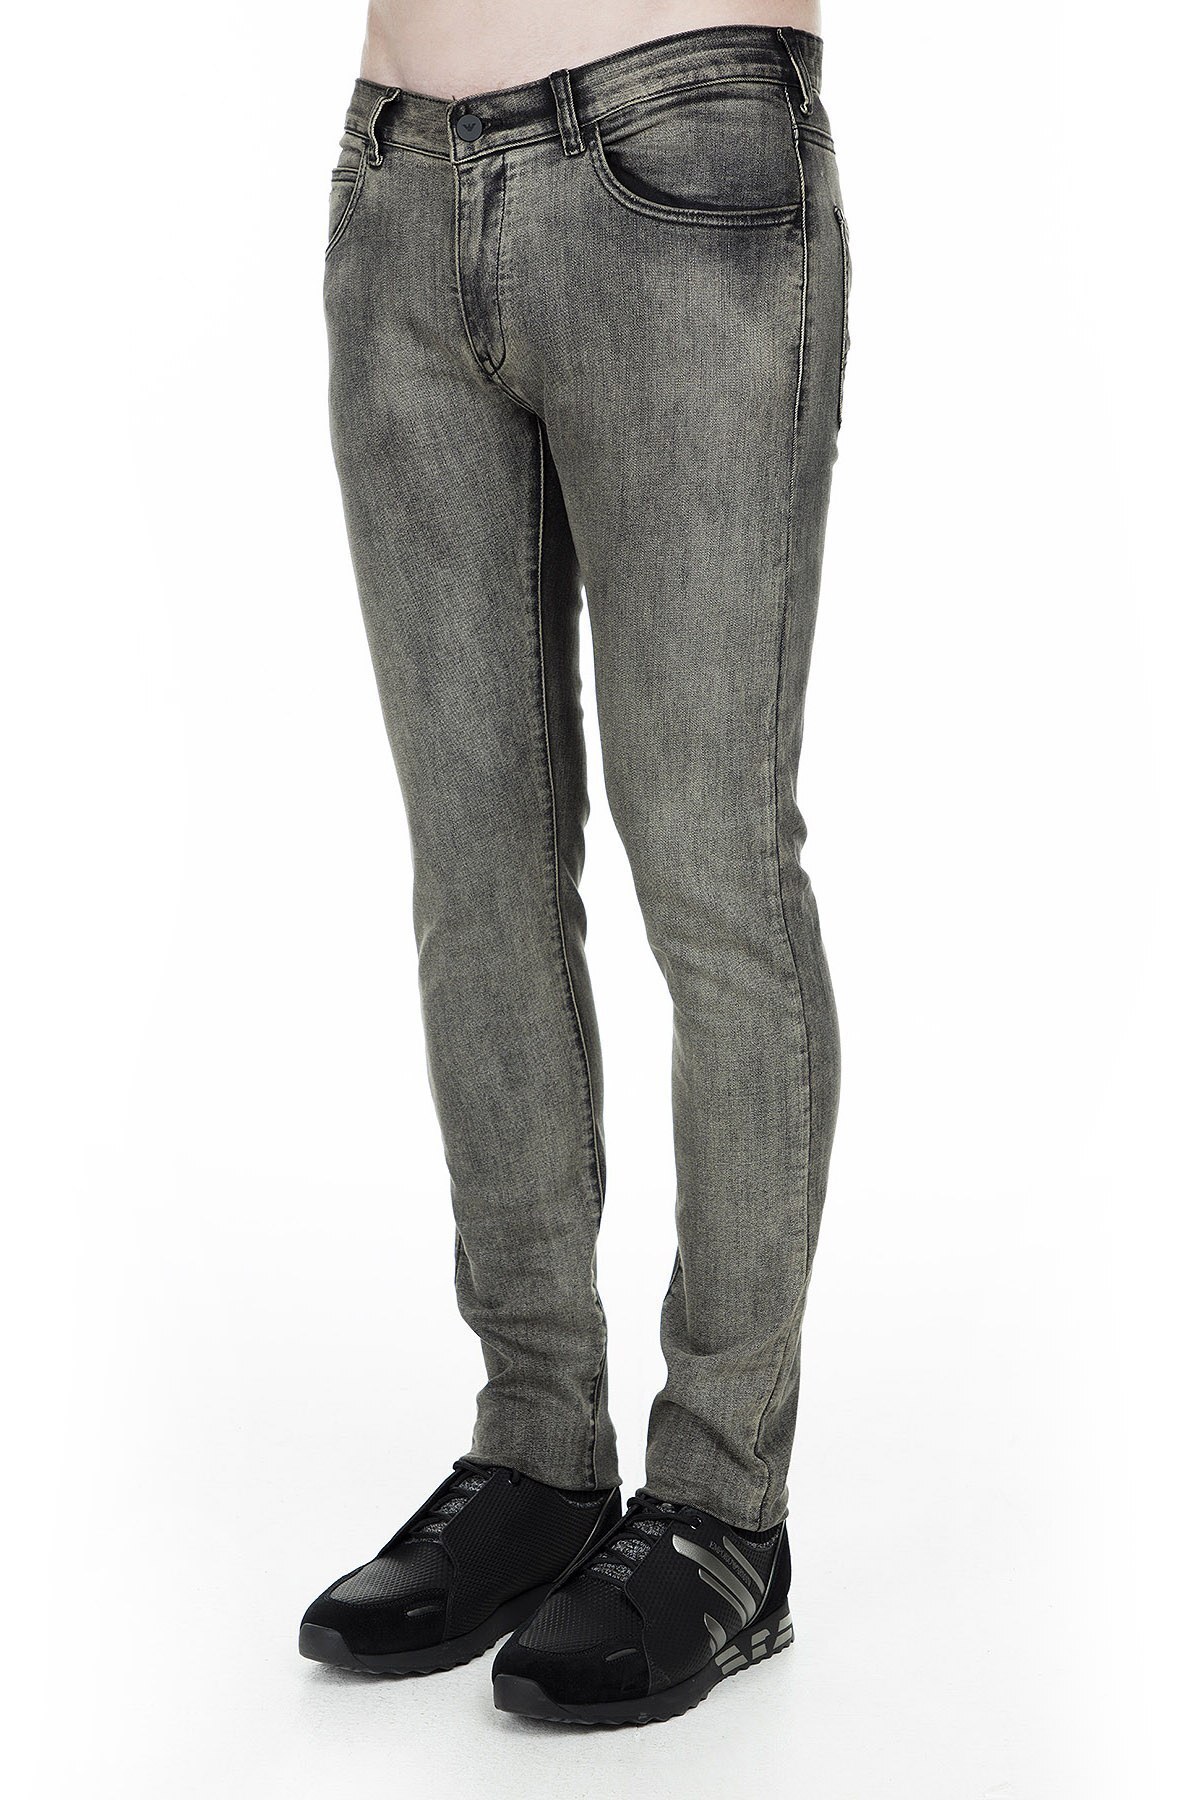 Emporio Armani J10 Jeans Erkek Kot Pantolon 6G1J10 1D6MZ 0581 YEŞİL